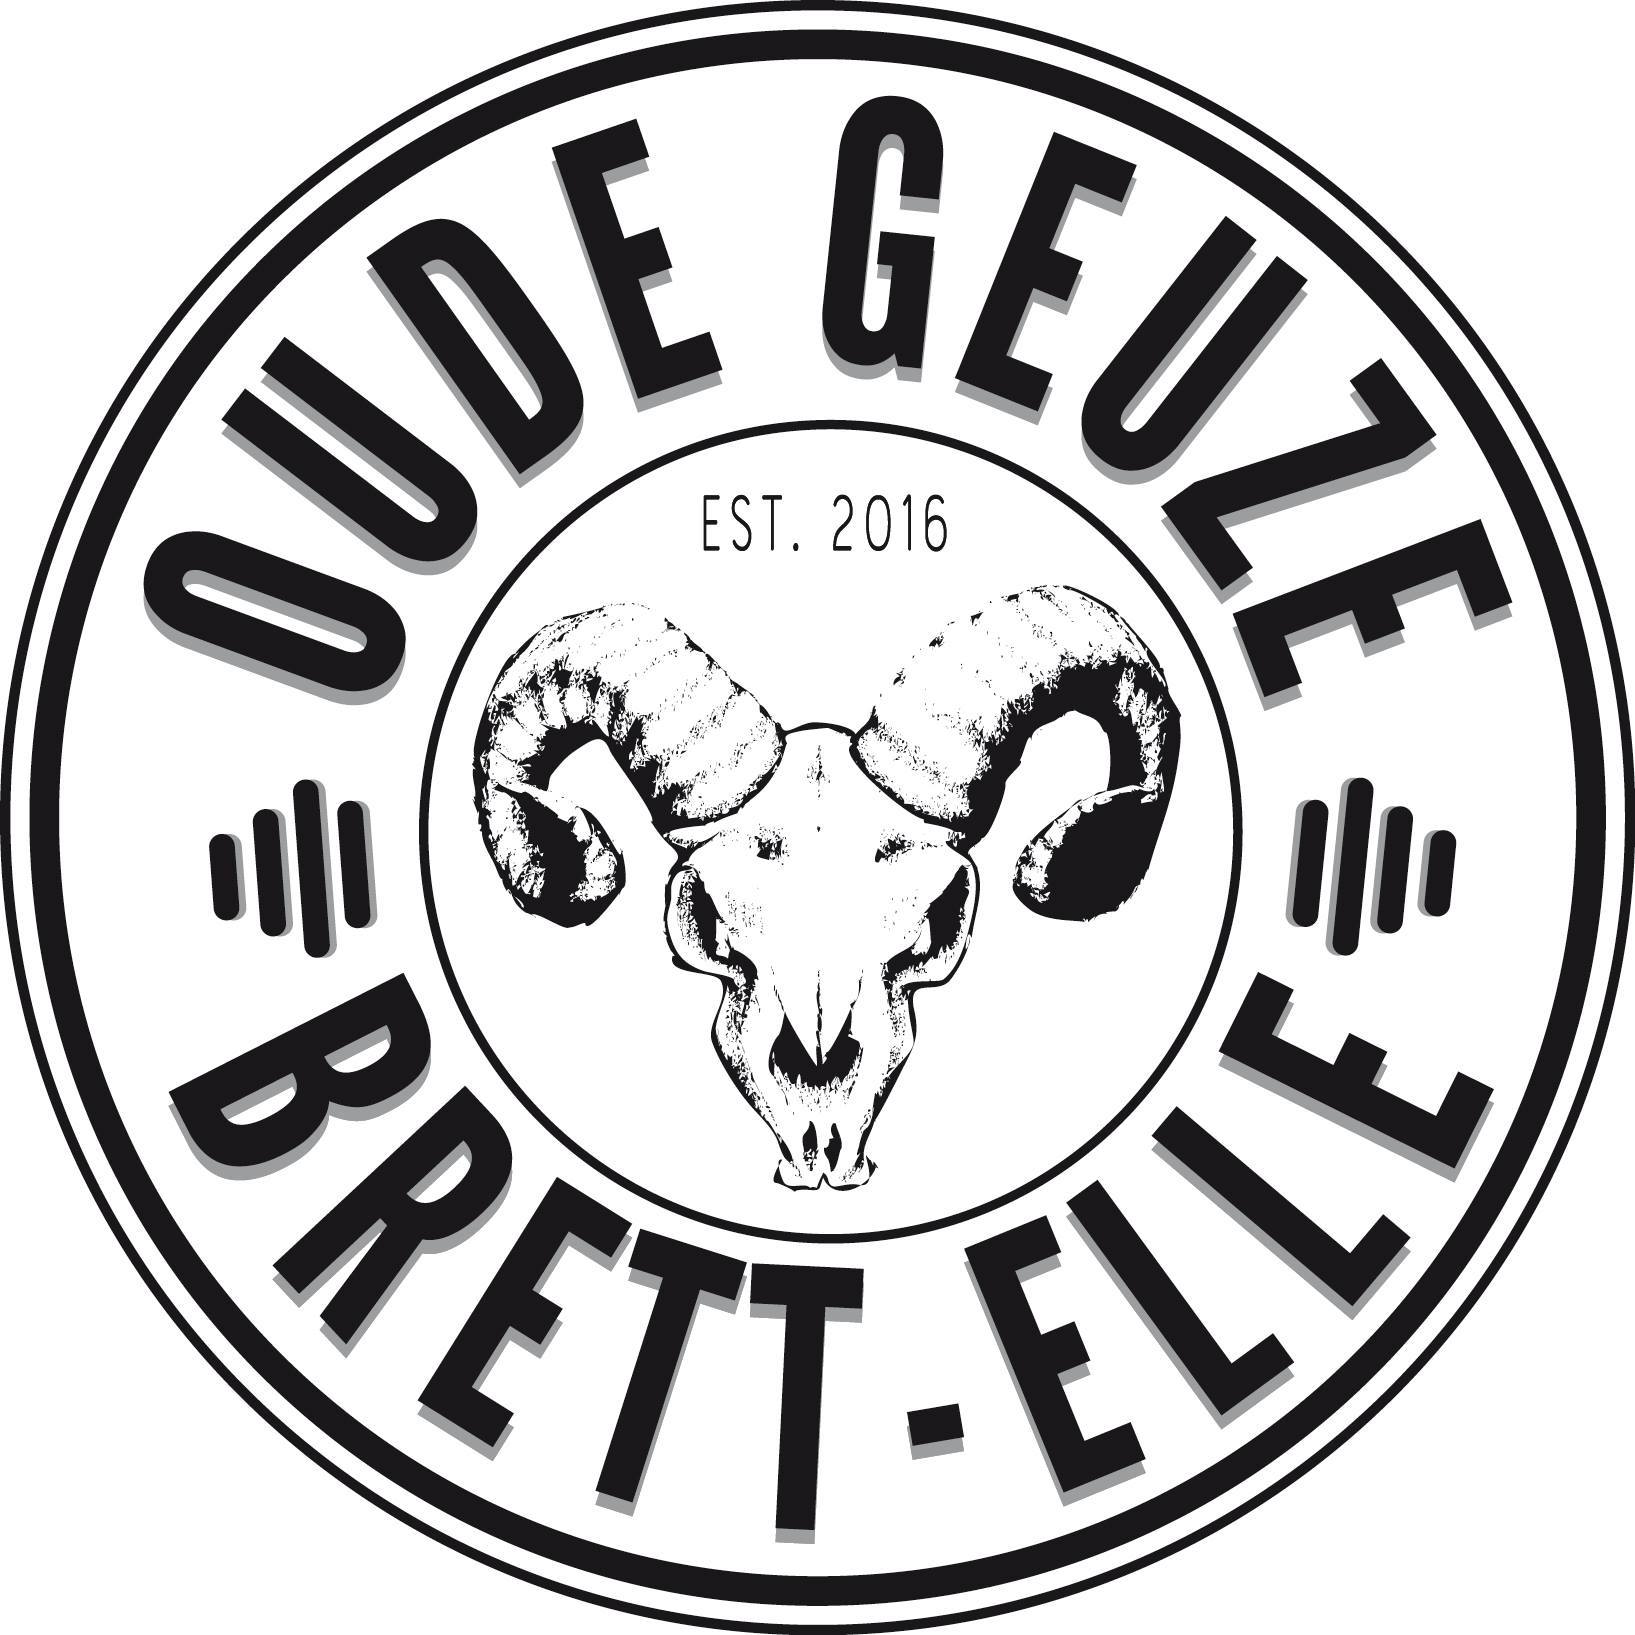 The logo of the new Brett Elle Oude Geuze from Lambiek Frabriek. 